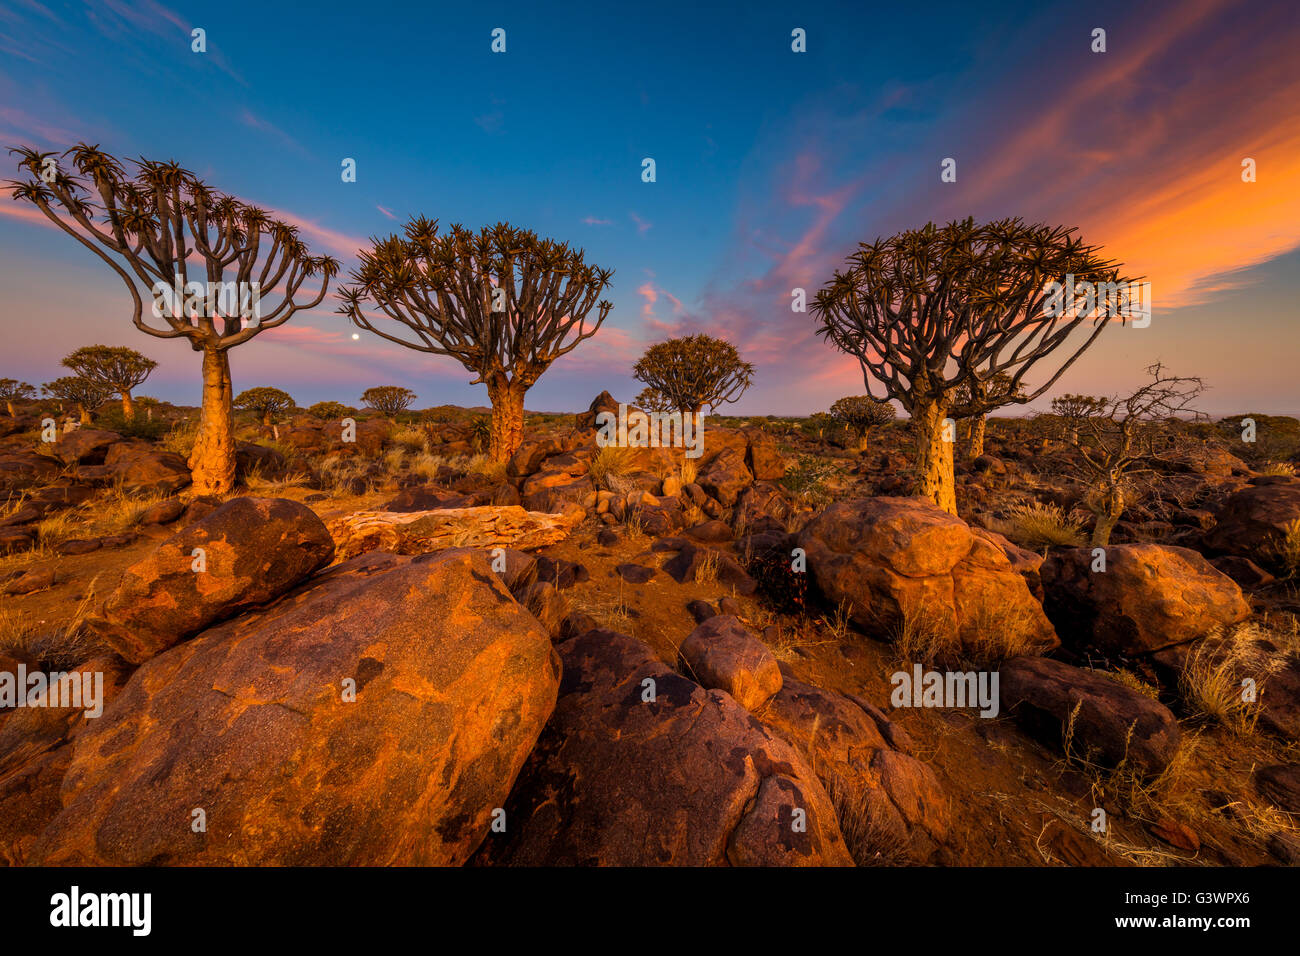 Der Köcherbaumwald (Kokerboom Woud in Afrikaans) ist ein Wald und touristische Attraktion der Süden Namibias. Stockfoto